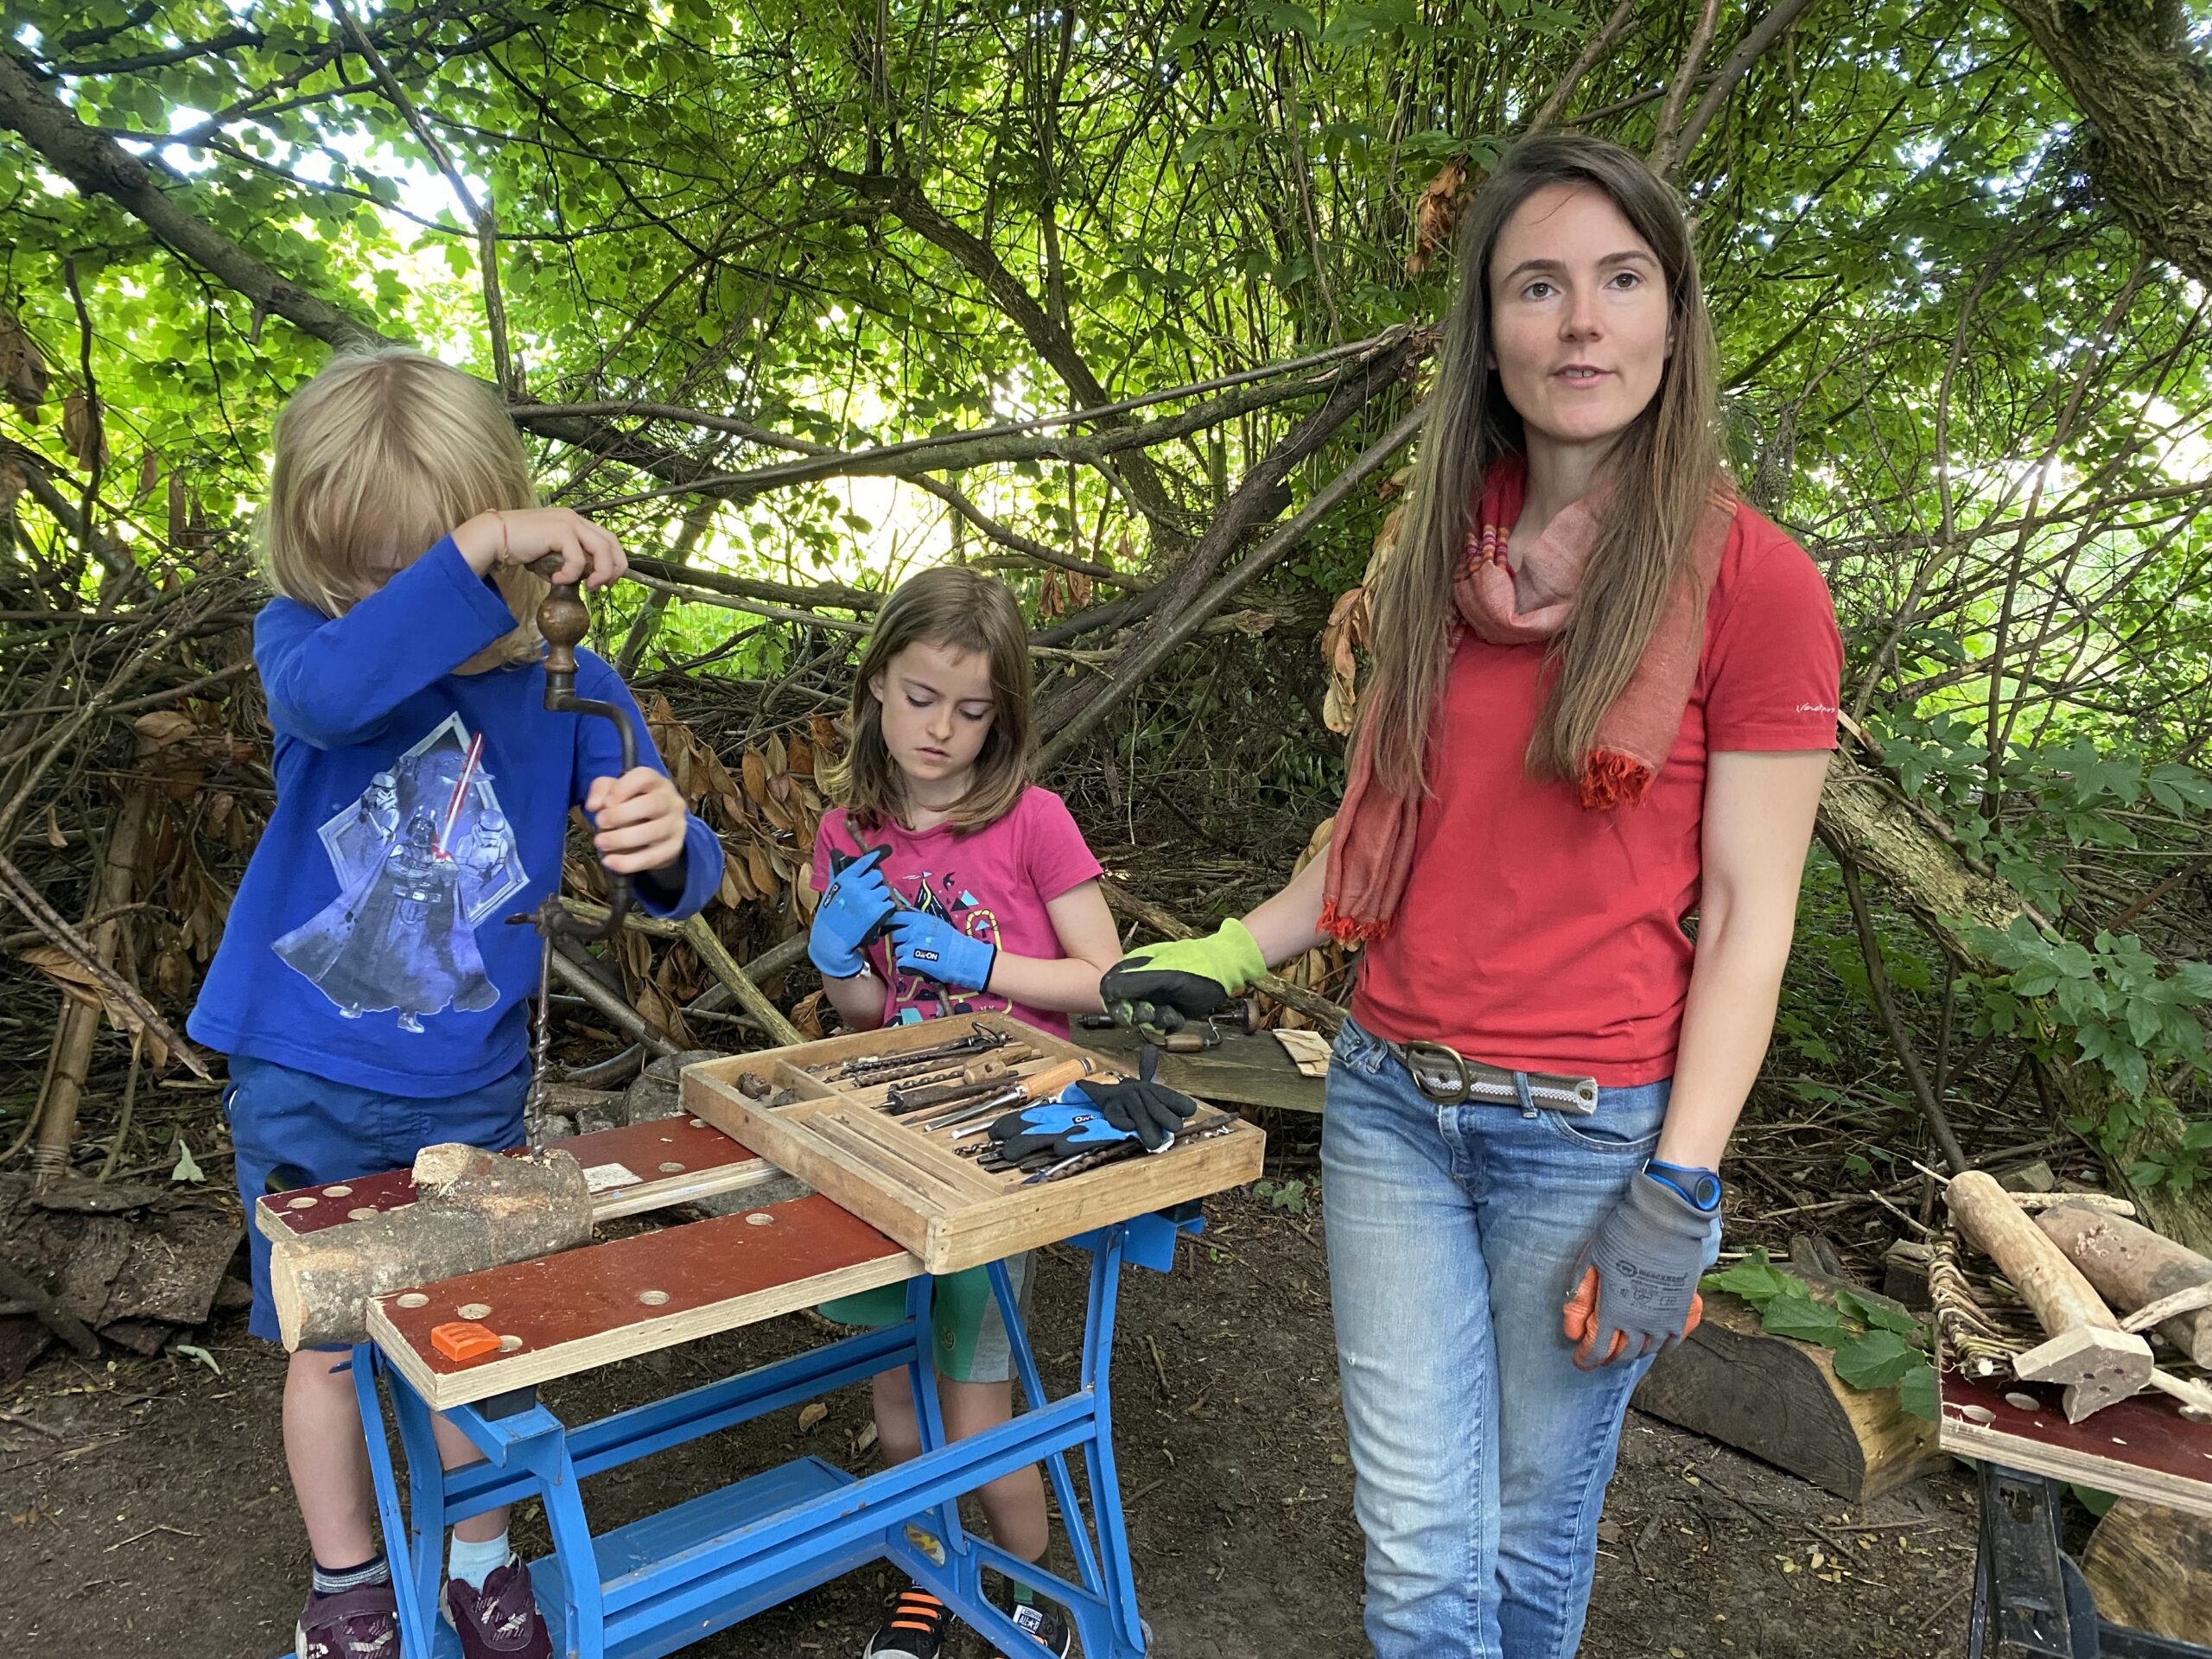 Comment des enfants créent-ils des sculptures en bois ?